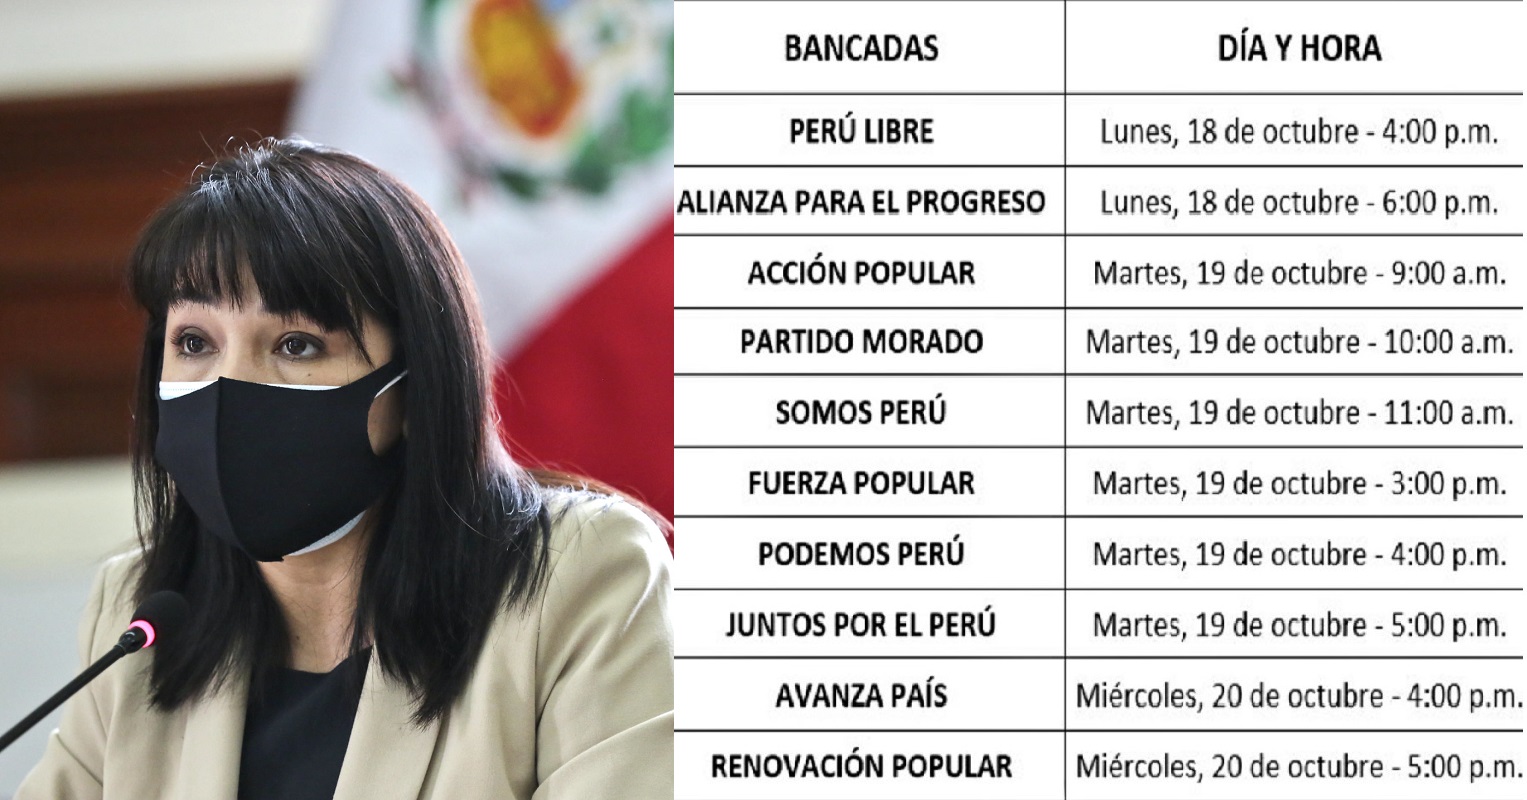 Rondas de Diálogo por la Gobernabilidad es el lema bajo el cual Mirtha Vásquez buscará ganar el voto de confianza del parlamento peruano.